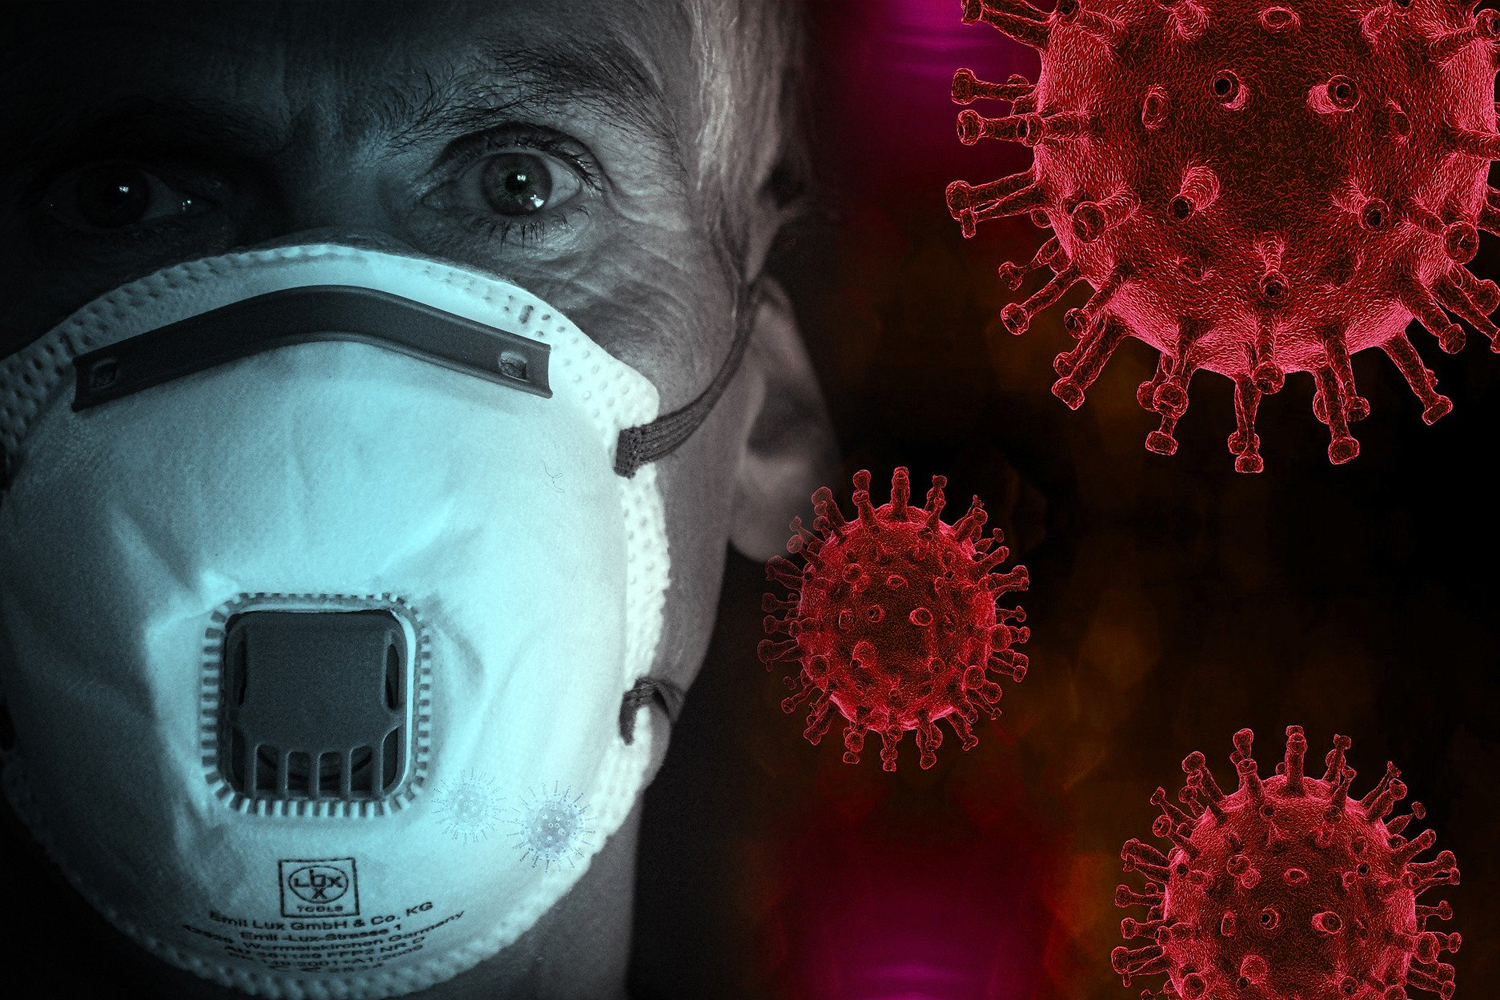 ¿Estarías de acuerdo que personas con síntomas de gripe usen mascarillas en espacio cerrados?